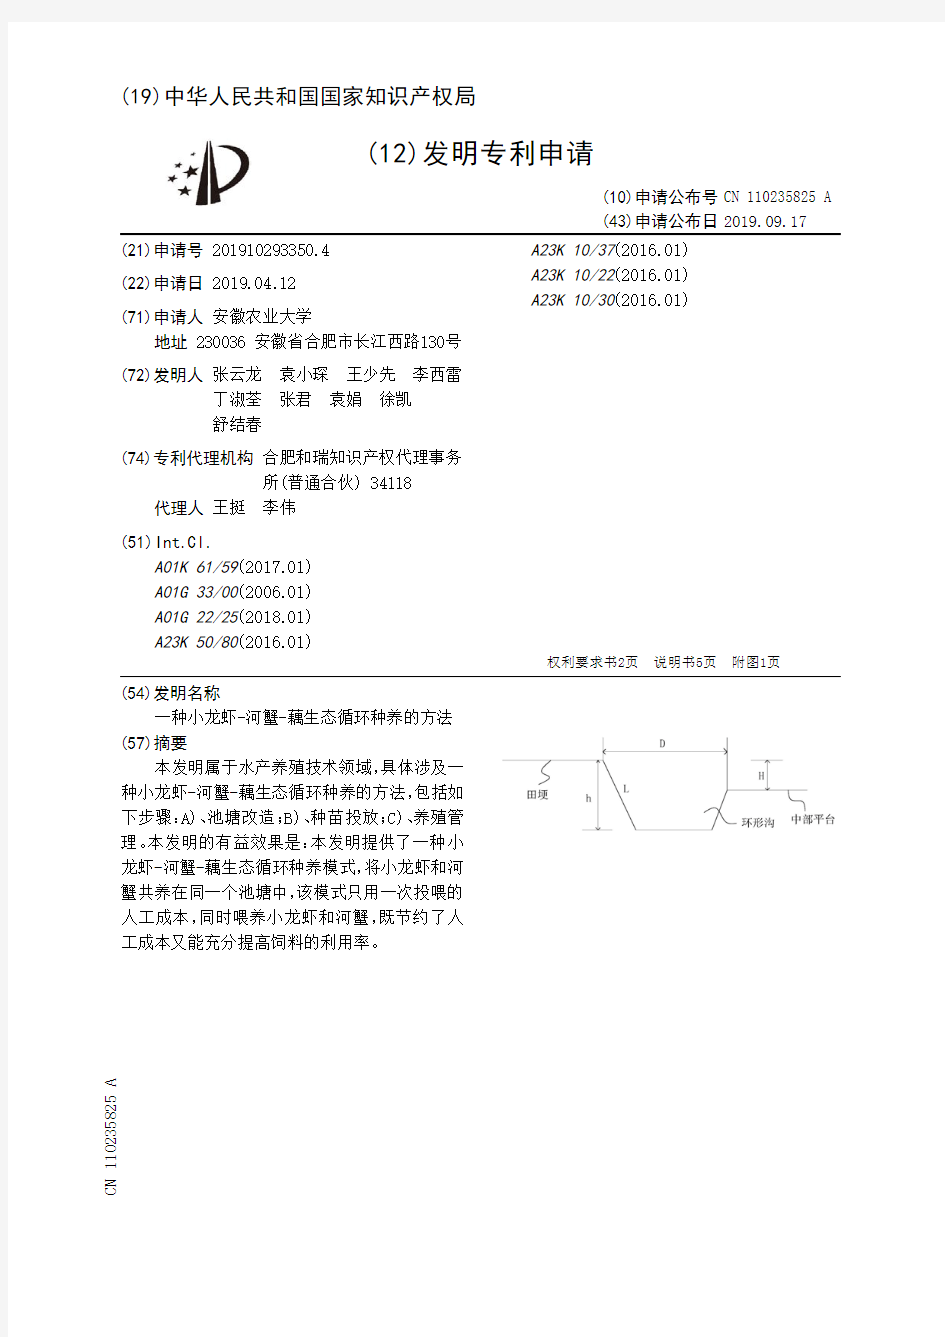 【CN110235825A】一种小龙虾河蟹藕生态循环种养的方法【专利】